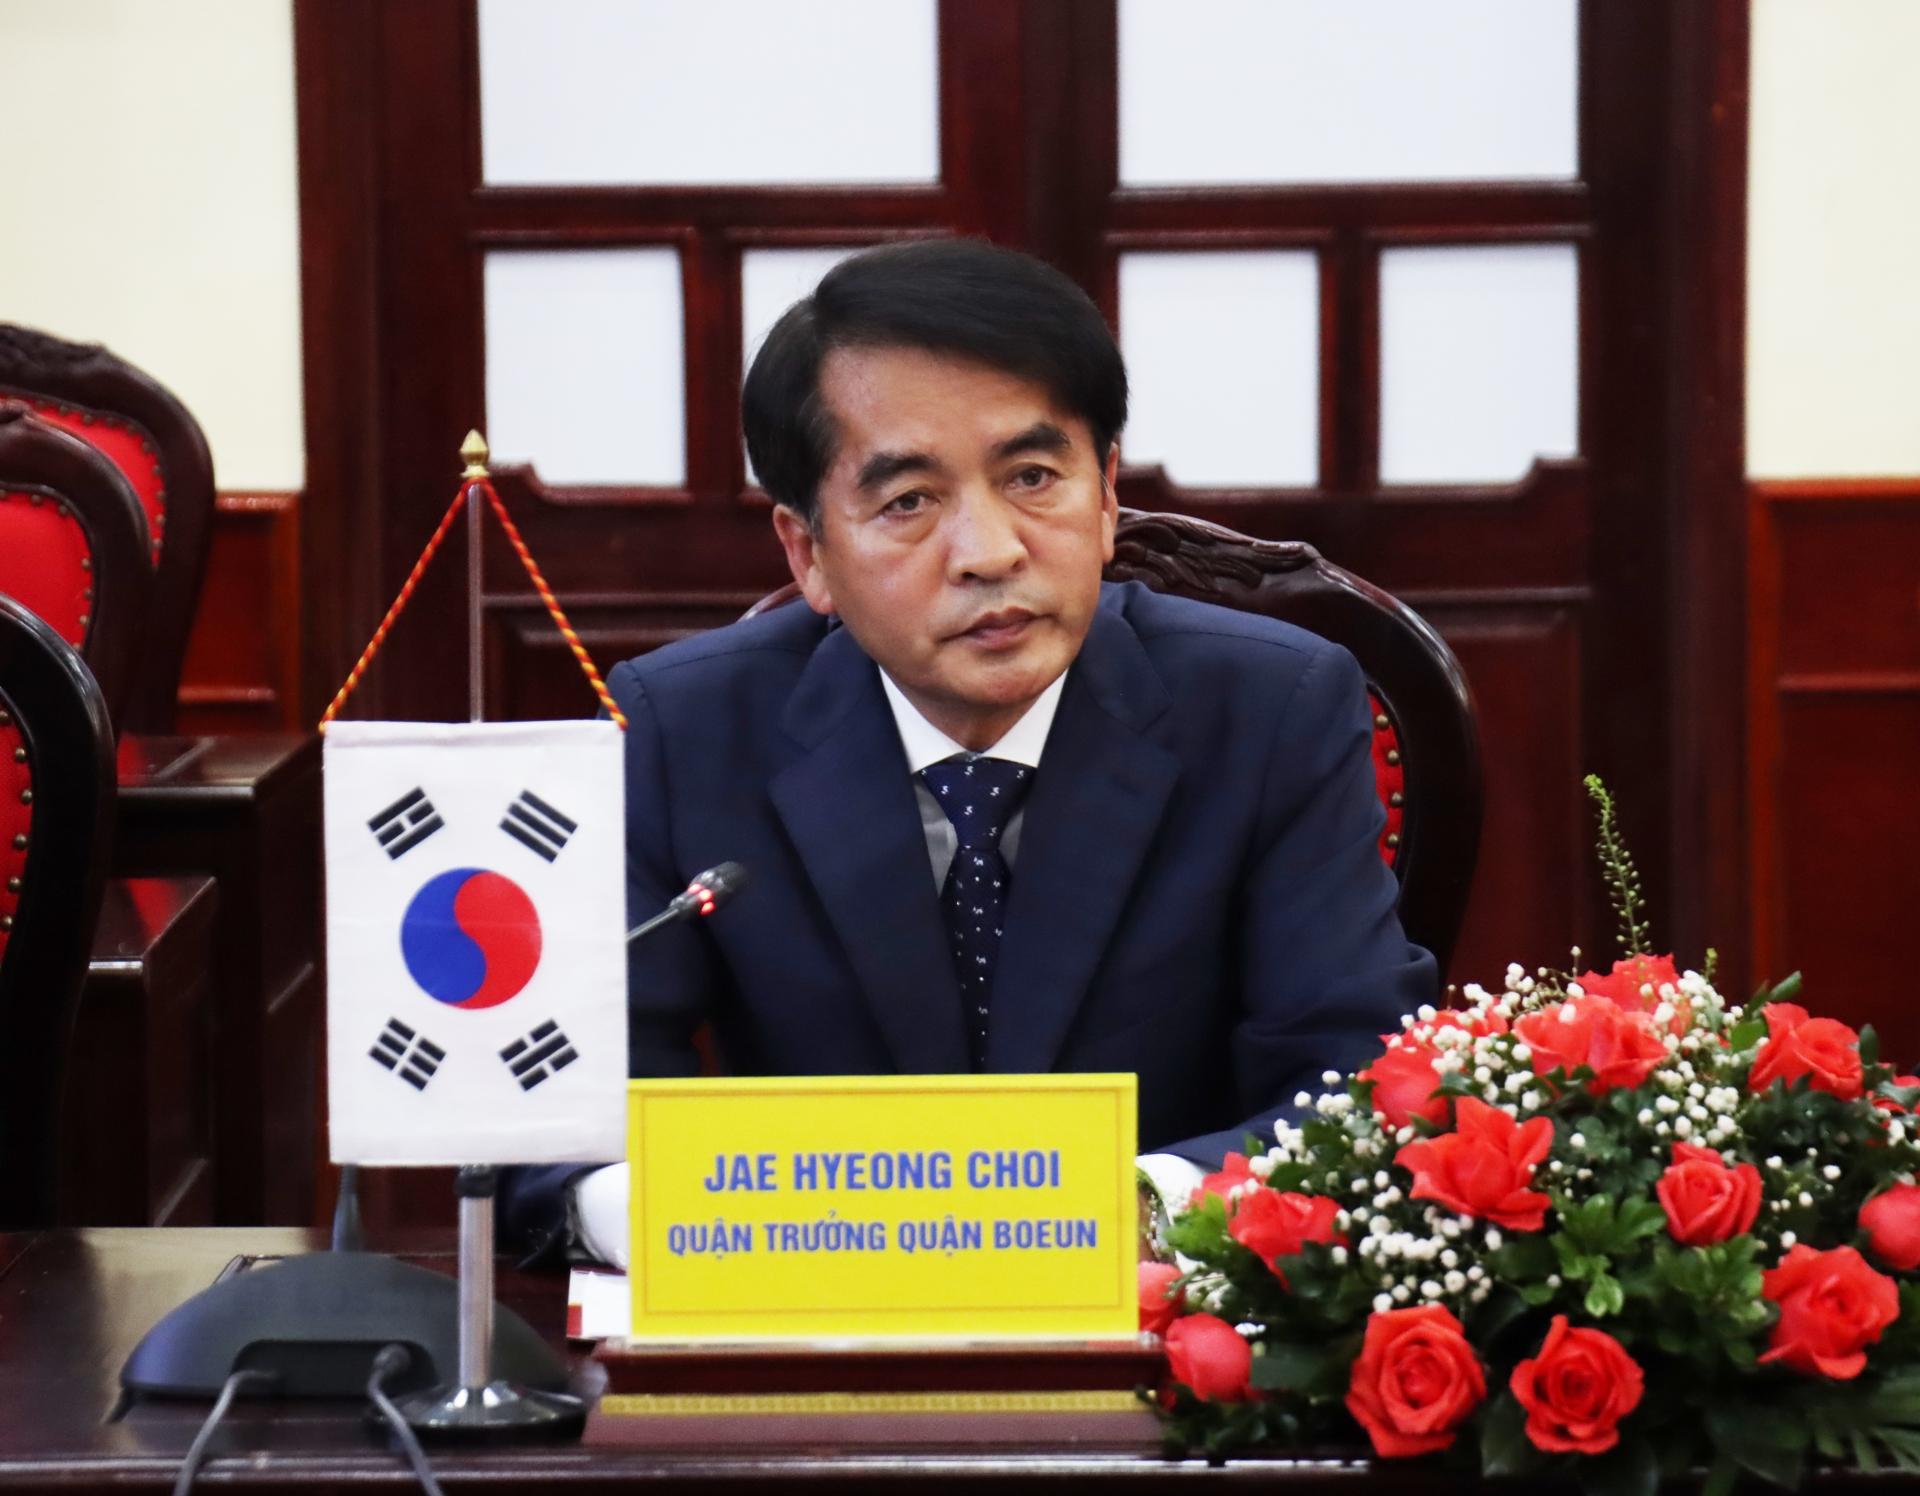 Ngài Jae Hyeong Choi, Quận trưởng quận Boeun phát biểu tại buổi làm việc.